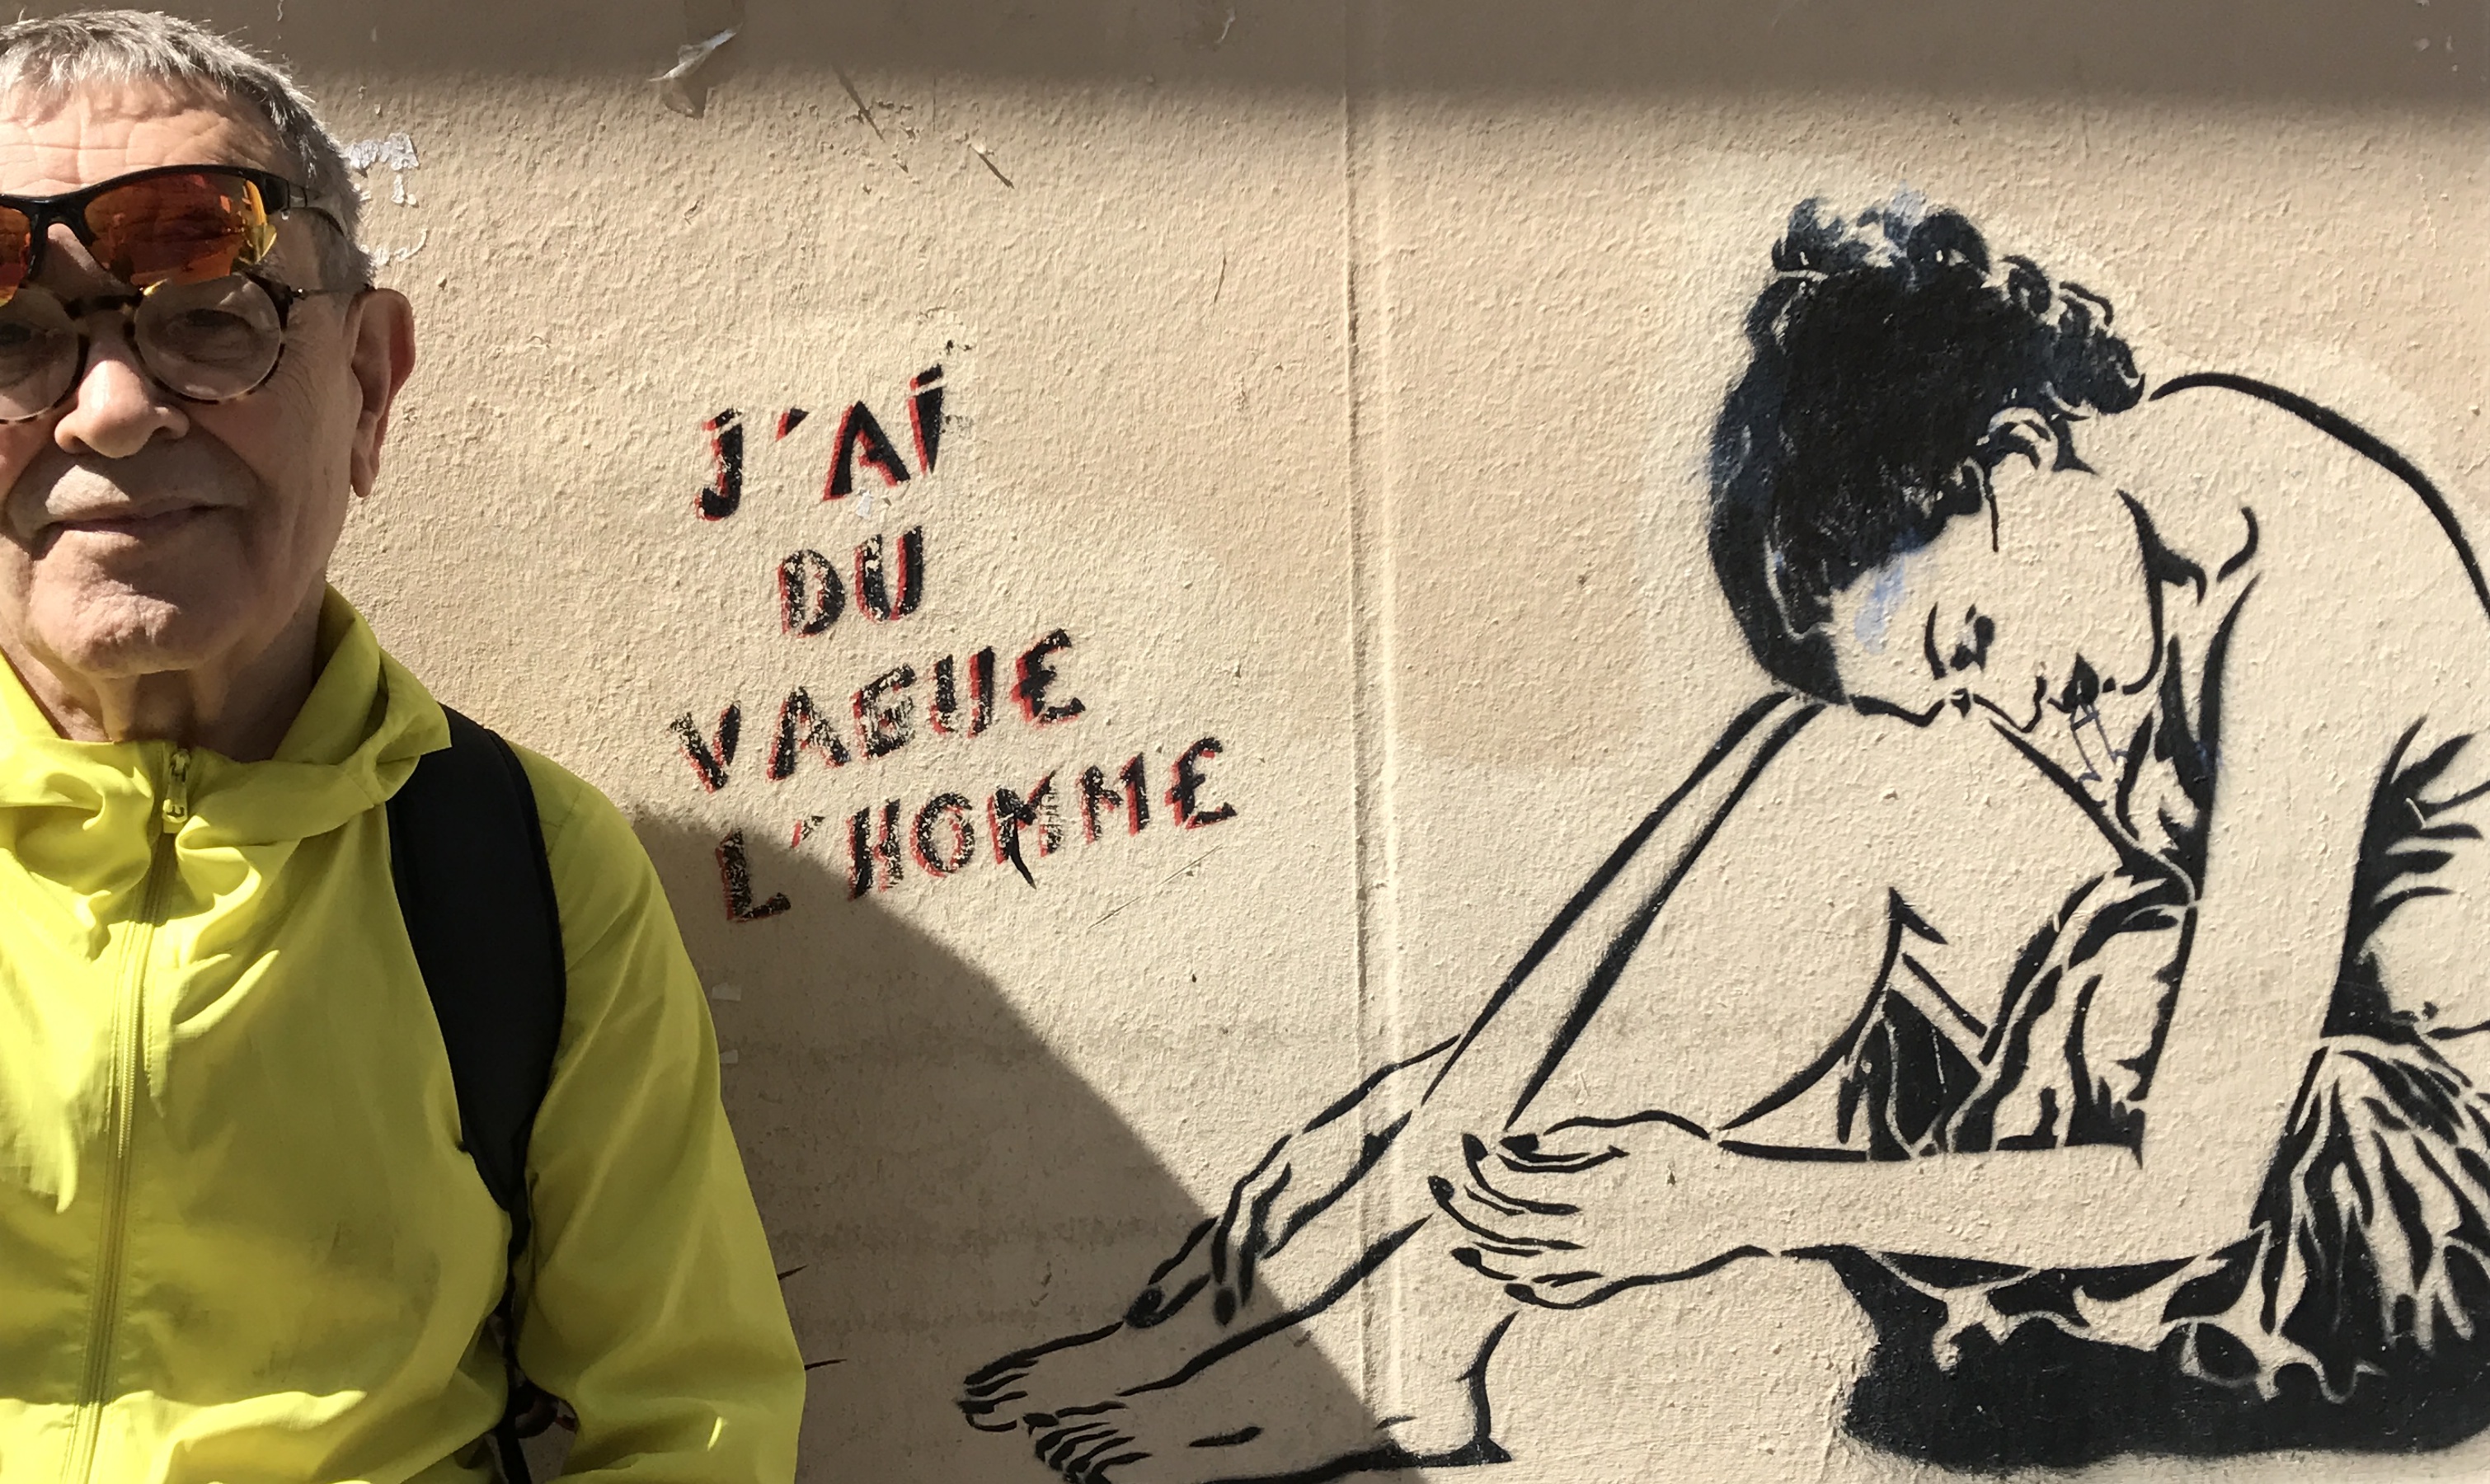 Fresque de l'artiste Miss-Tic, visible dans le 13e arrondissement de Paris.